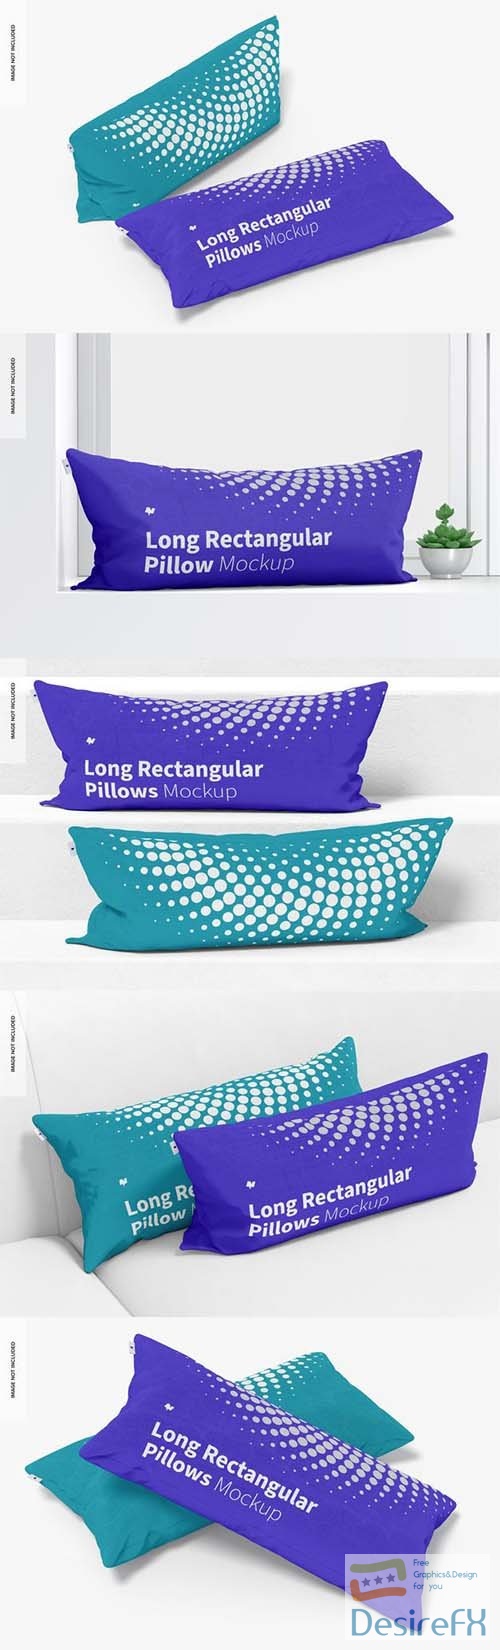 Long rectangular pillows mockup